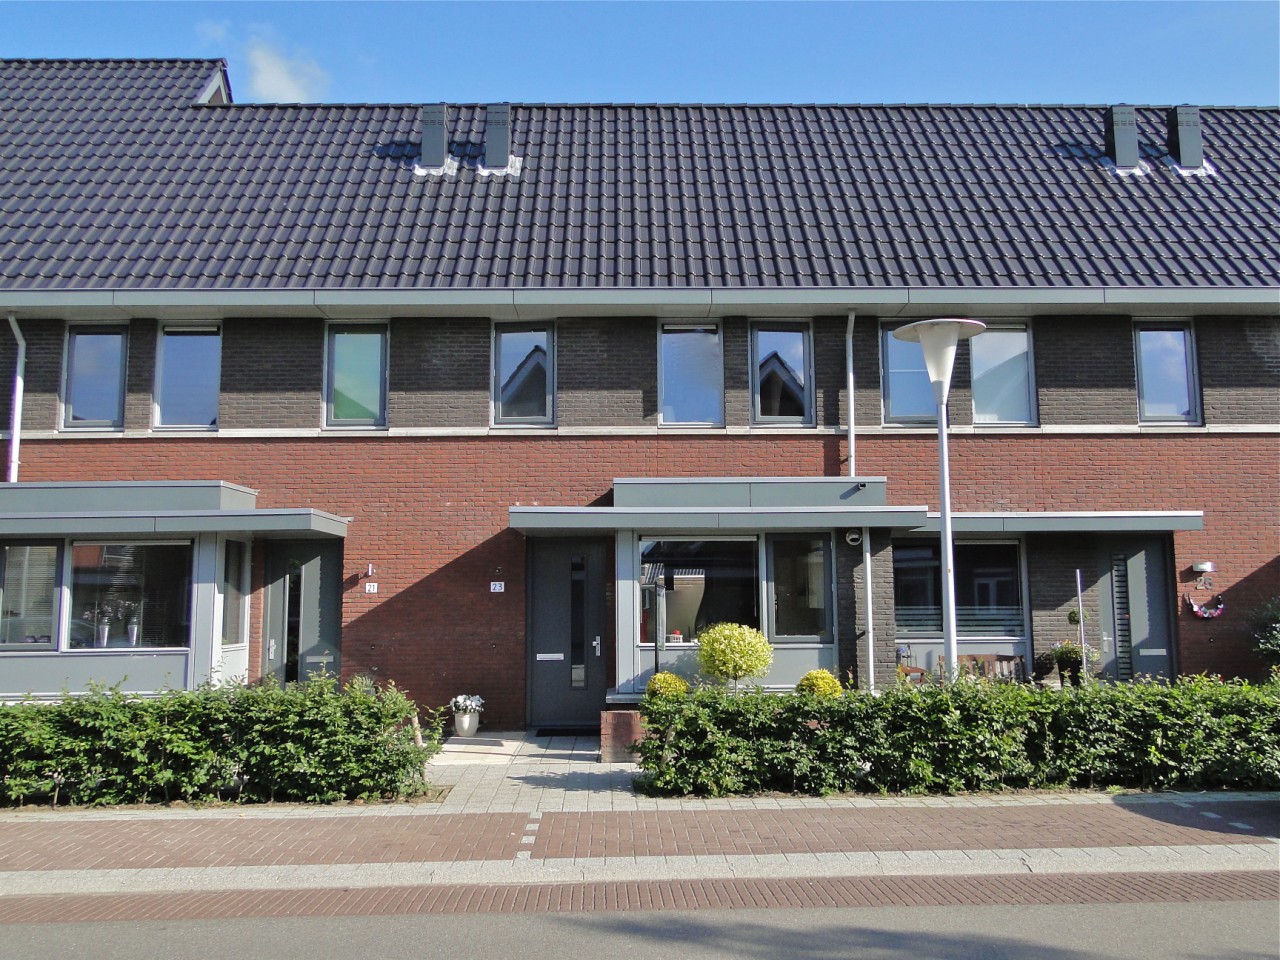 Moderne keurig afgewerkte tussenwoning met zonnige diepe tuin. In het nieuwste gedeelte van Stadshagen staat deze moderne, keurig afgewerkte, ideale starterswoning met mogelijkheden tot uitbreiding.